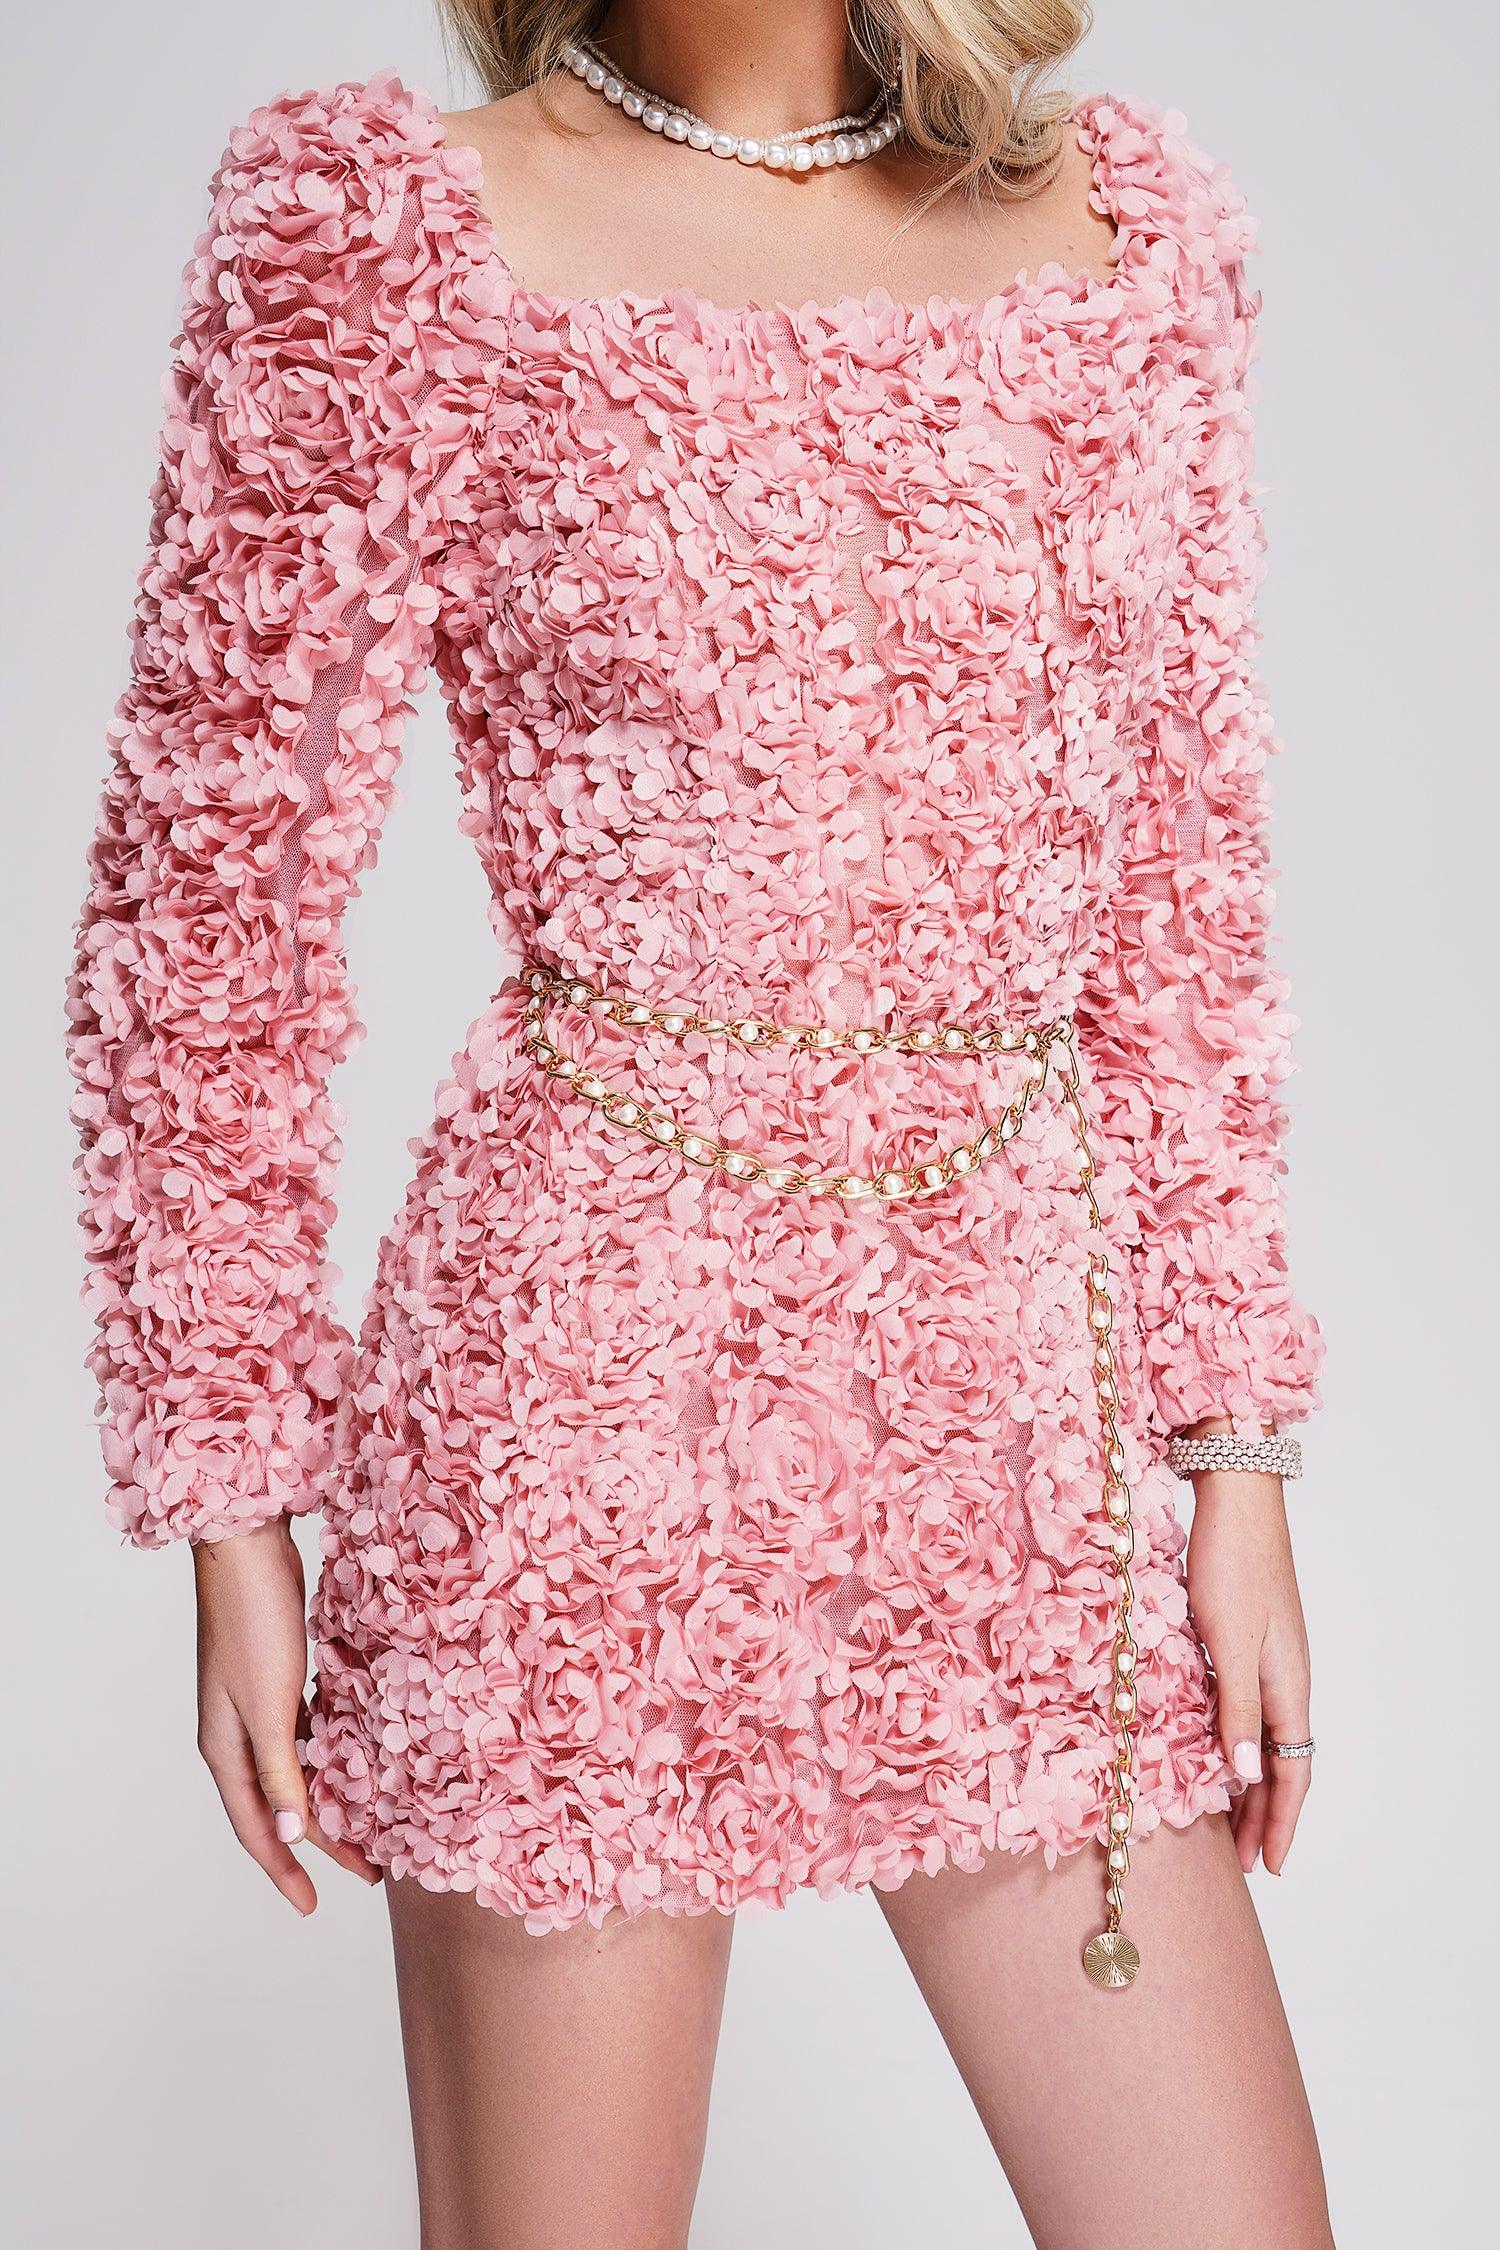 Louxia bloemen mini-jurk